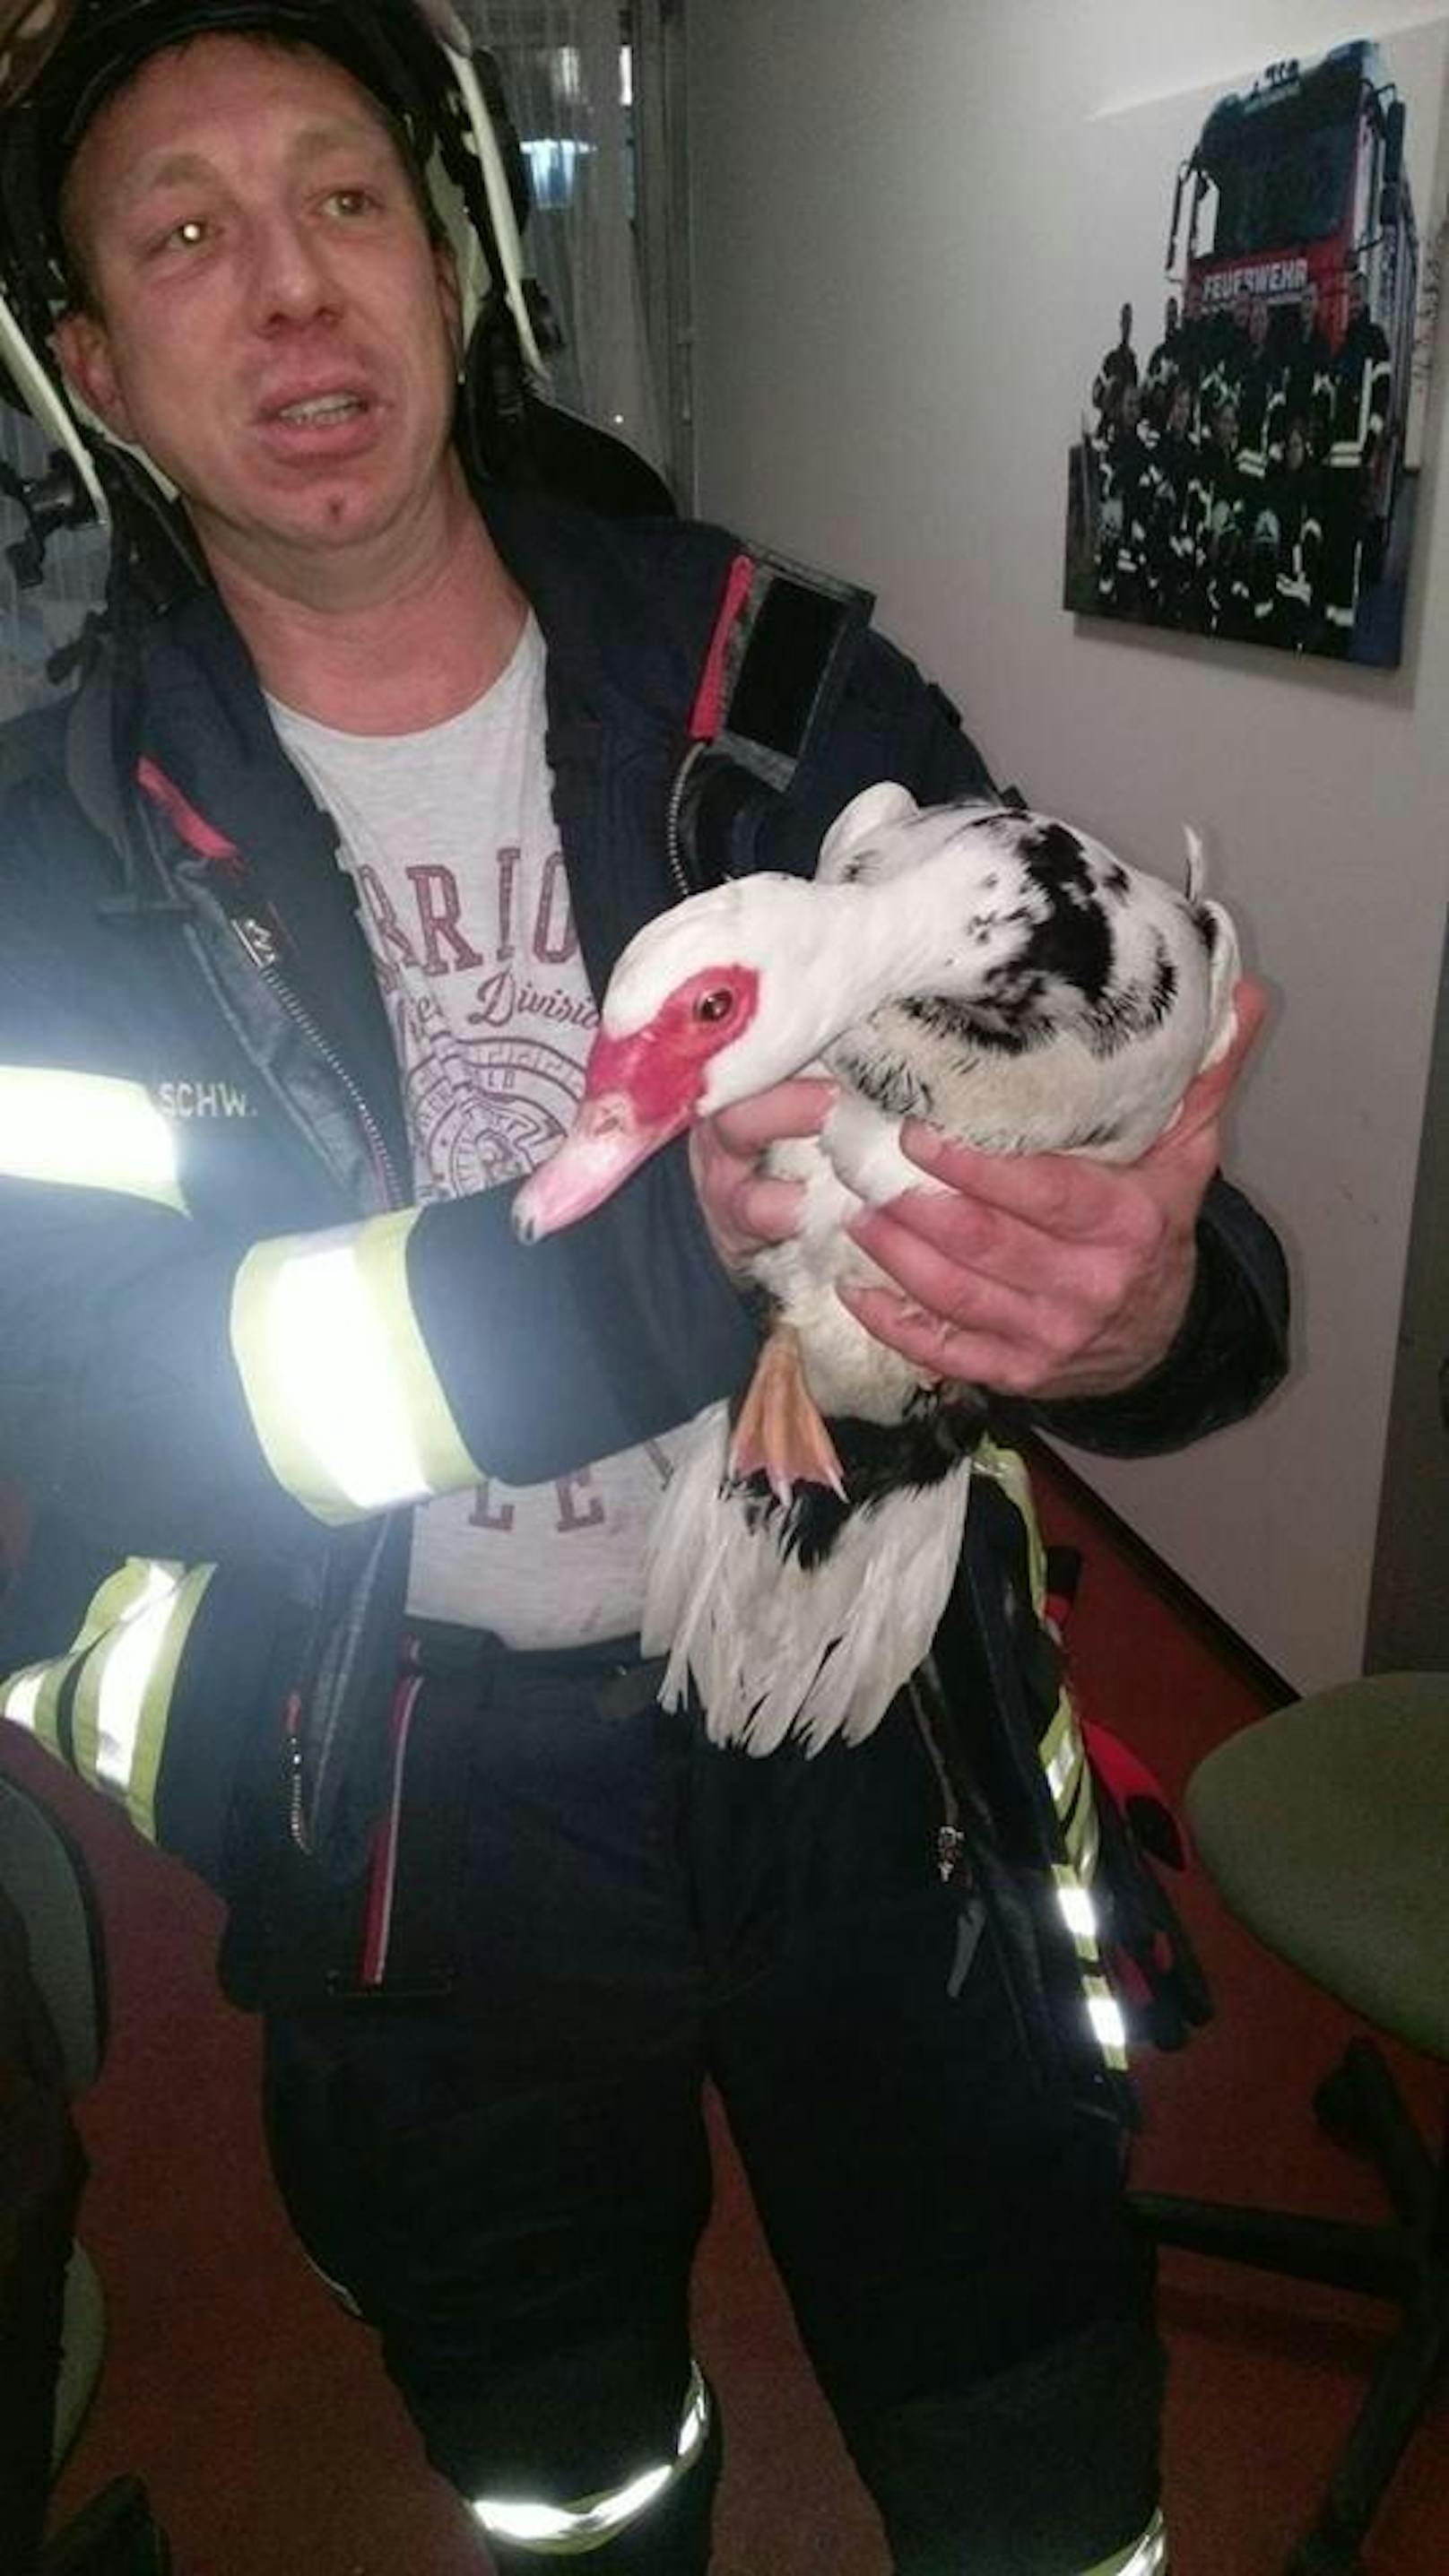 Die Ente war zu Gast im Feuerwehrhaus und drehte dort ihre Runden.